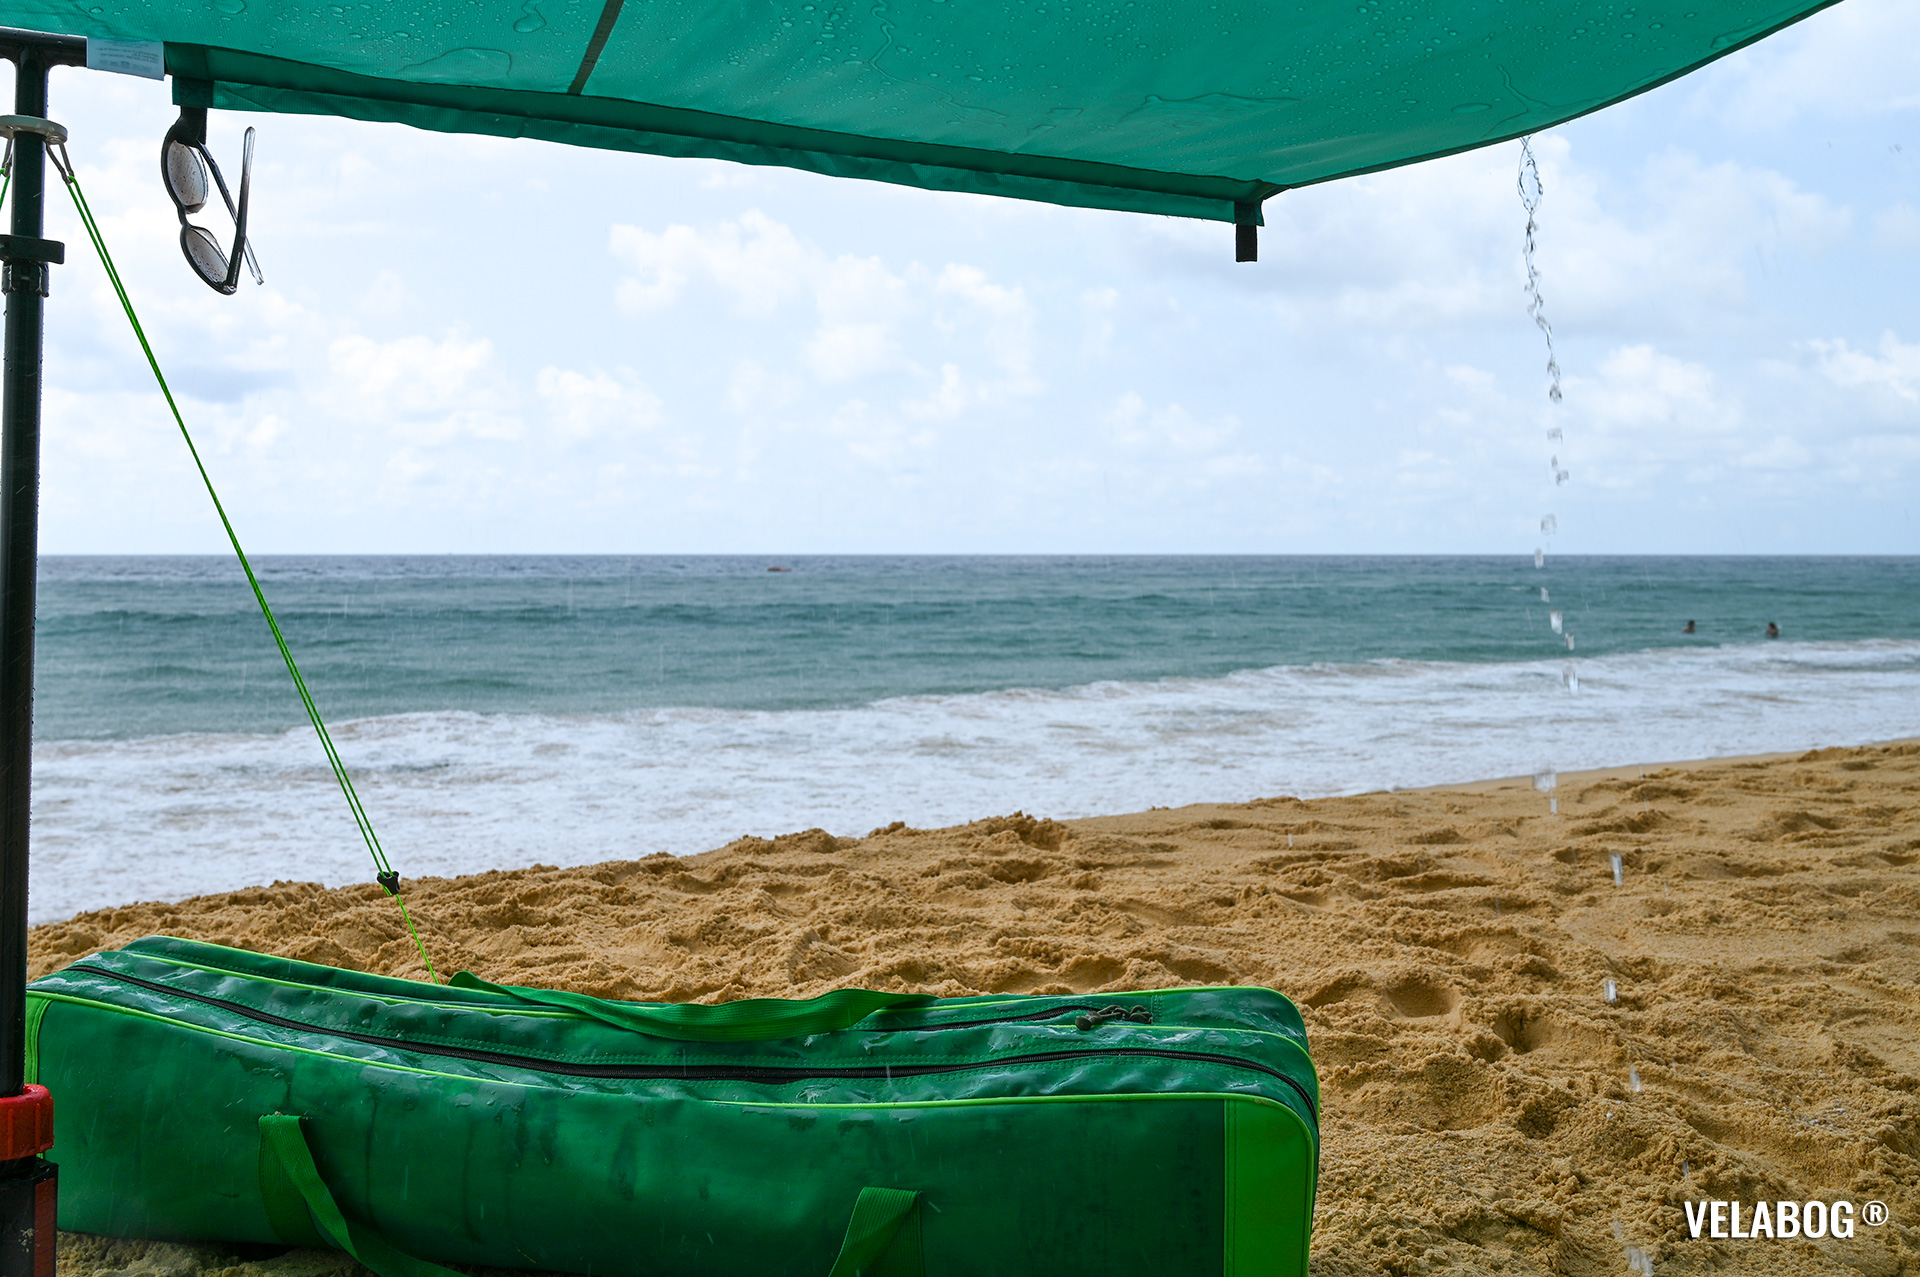 Strand Sonnensegel Strandzelt Velabog Breeze, grün. Während der tropischen Regenschauers am Strand in Thailand. Bester Regen- und Sonnenschutz Strand. Test Strand Sonnensegel Aufbauoption - kein, leichter oder böiger Wind. Ansicht von unten. Details.